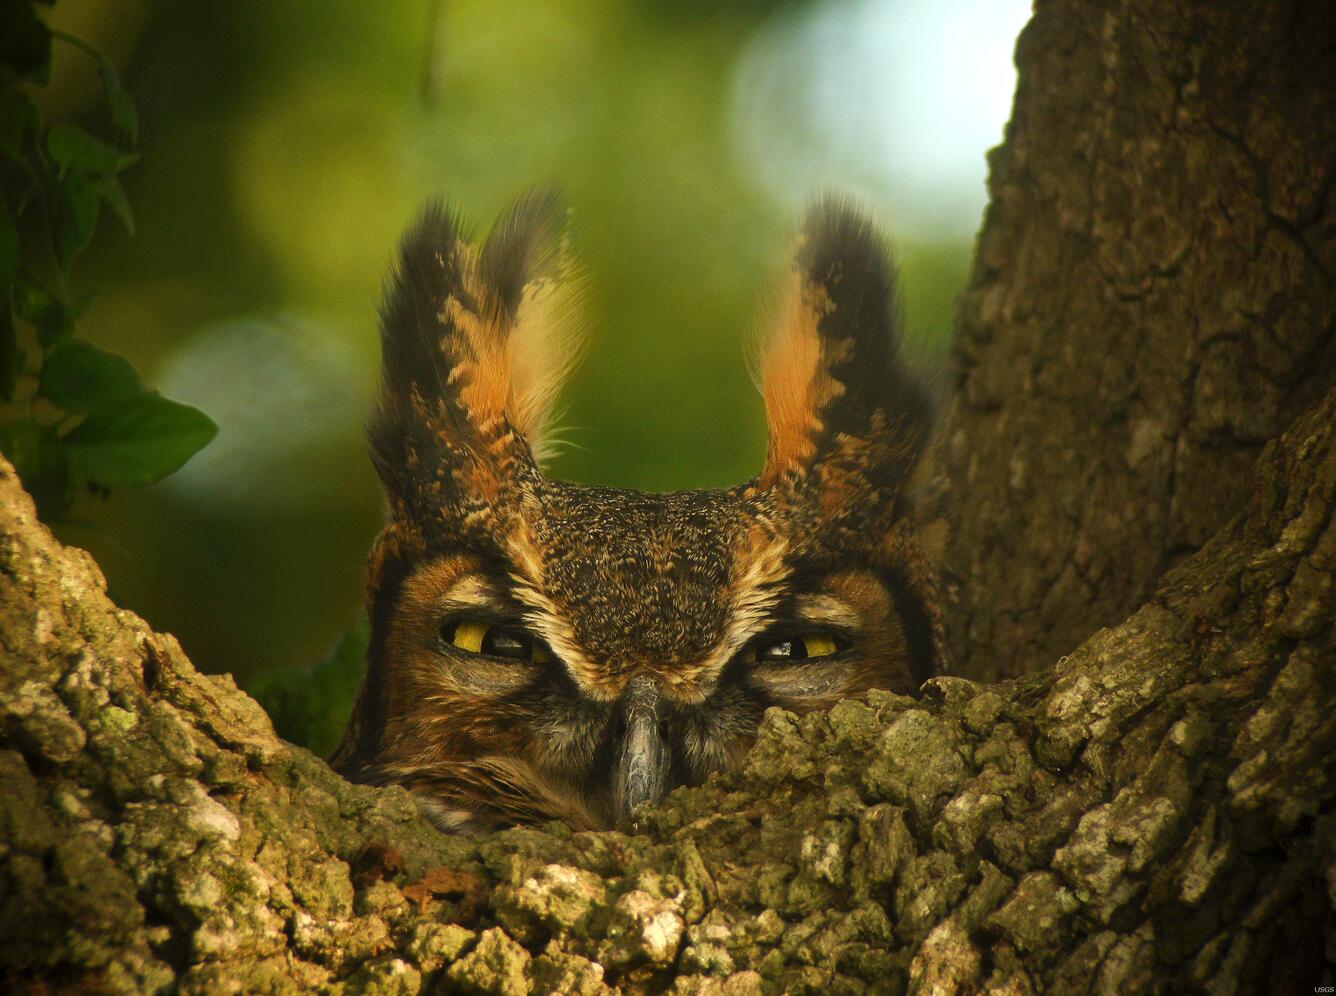 Image: Female Great Horned Owl on Her Nest